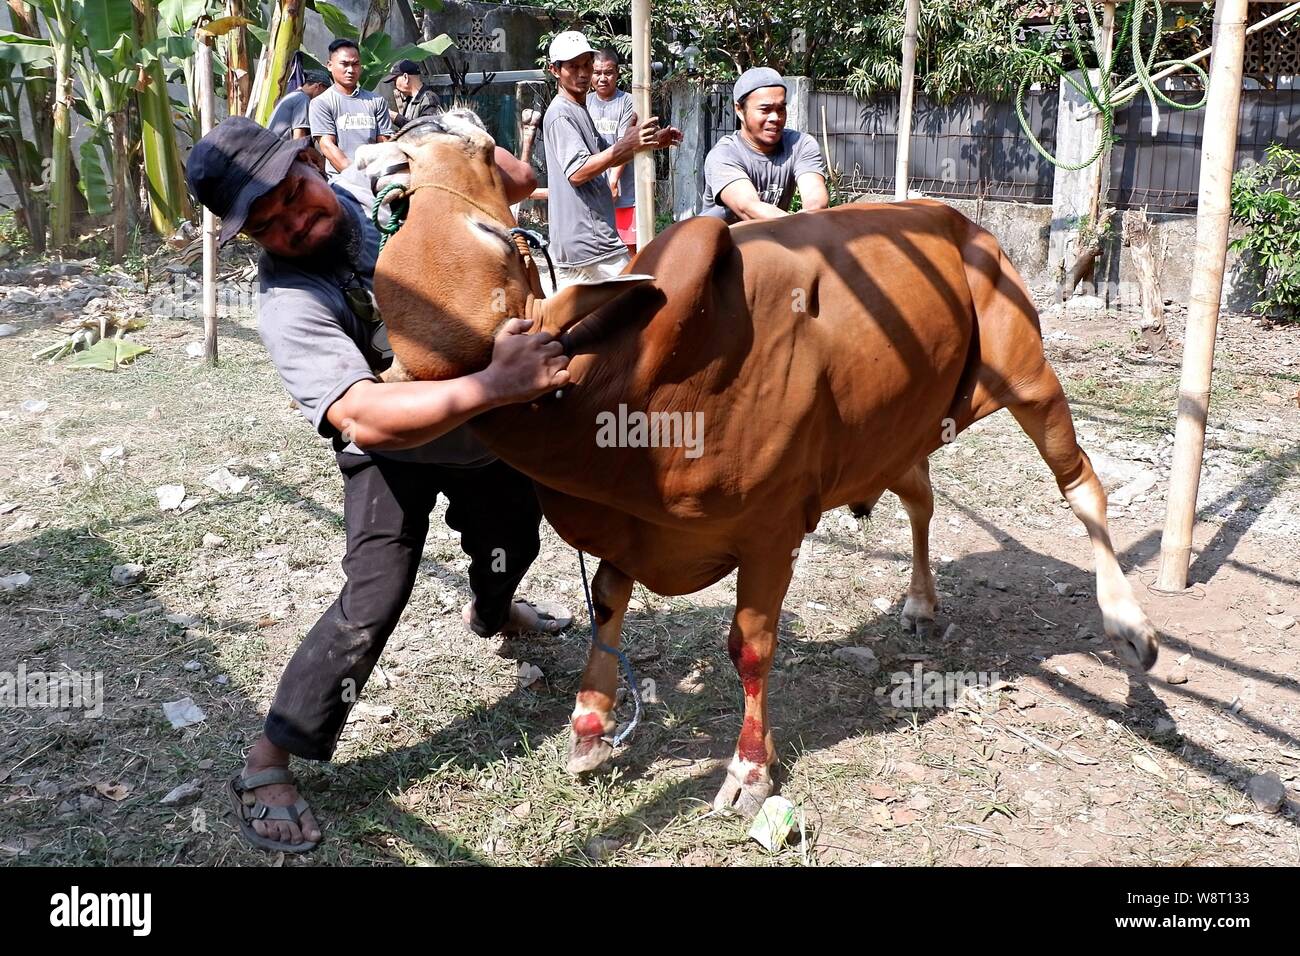 Alcuni uomini stanno cercando di catturare una mucca che si allontana da un allevamento di animali. Foto Stock